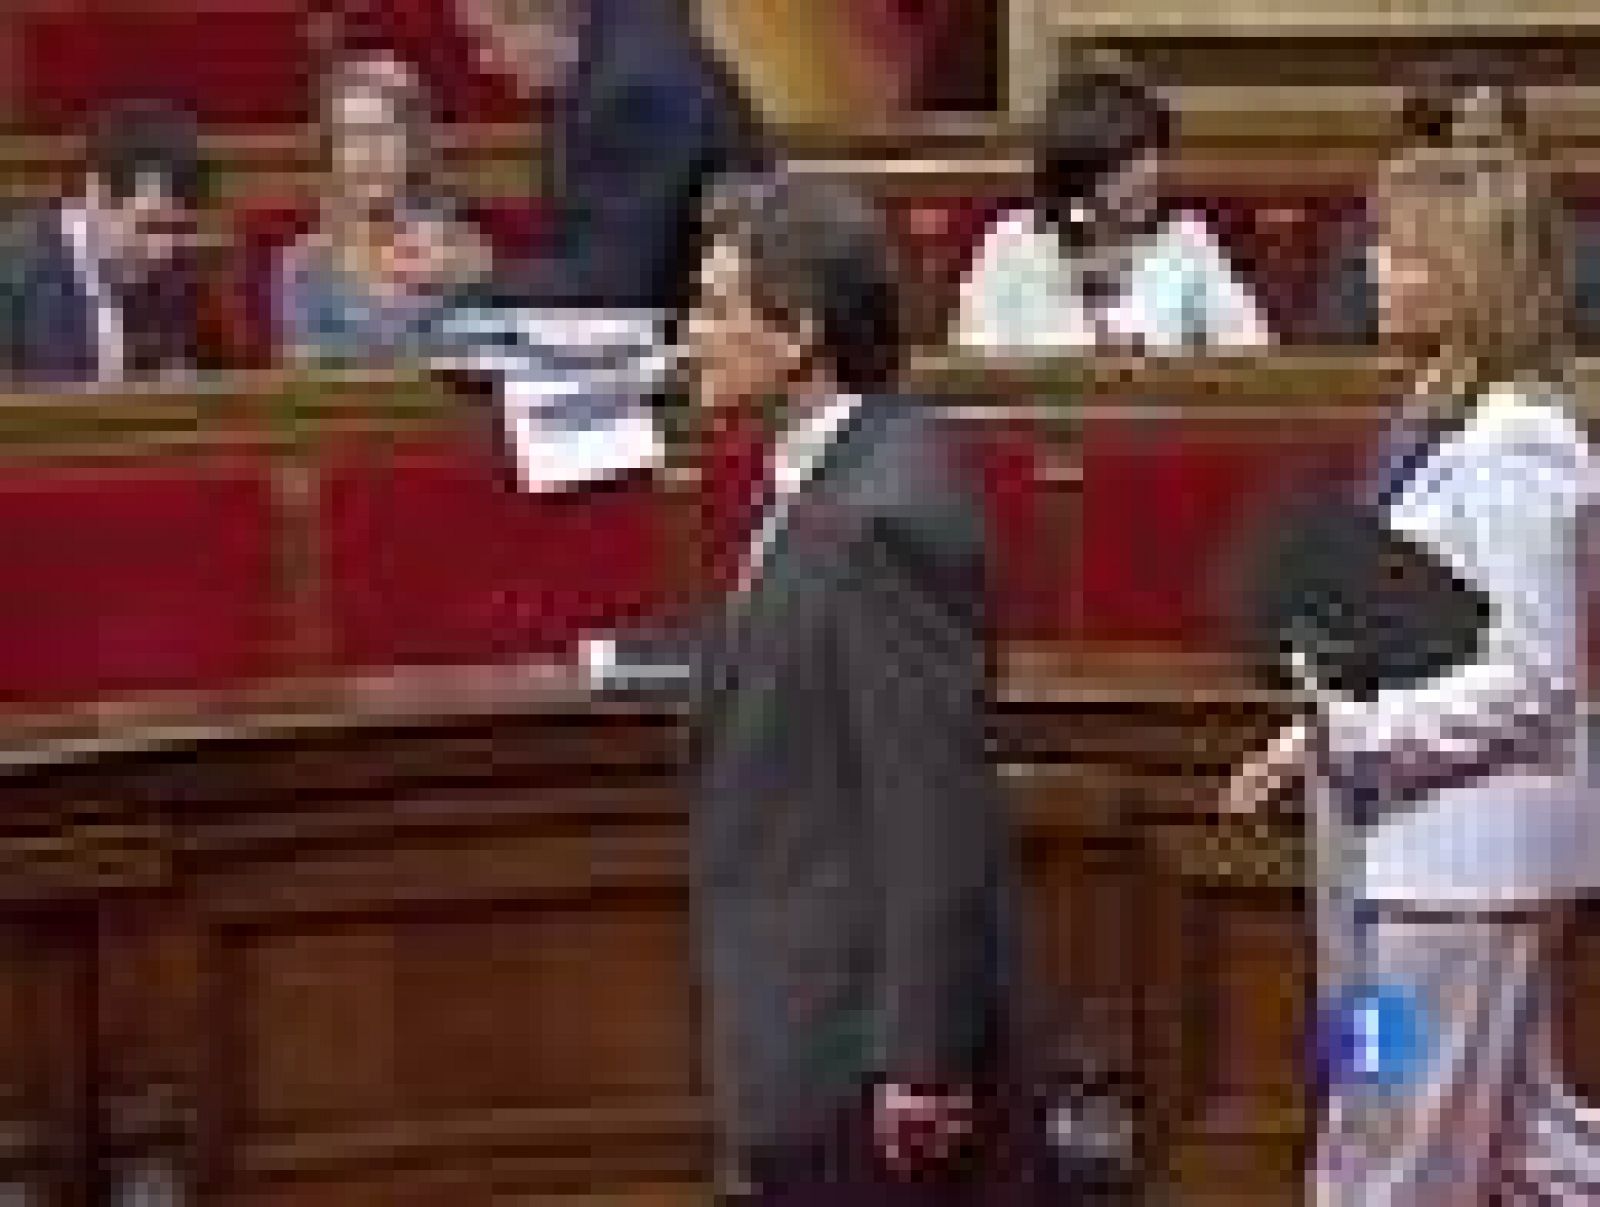   El Parlament de Cataluña debate esta tarde una propuesta de ley para declarar la independencia